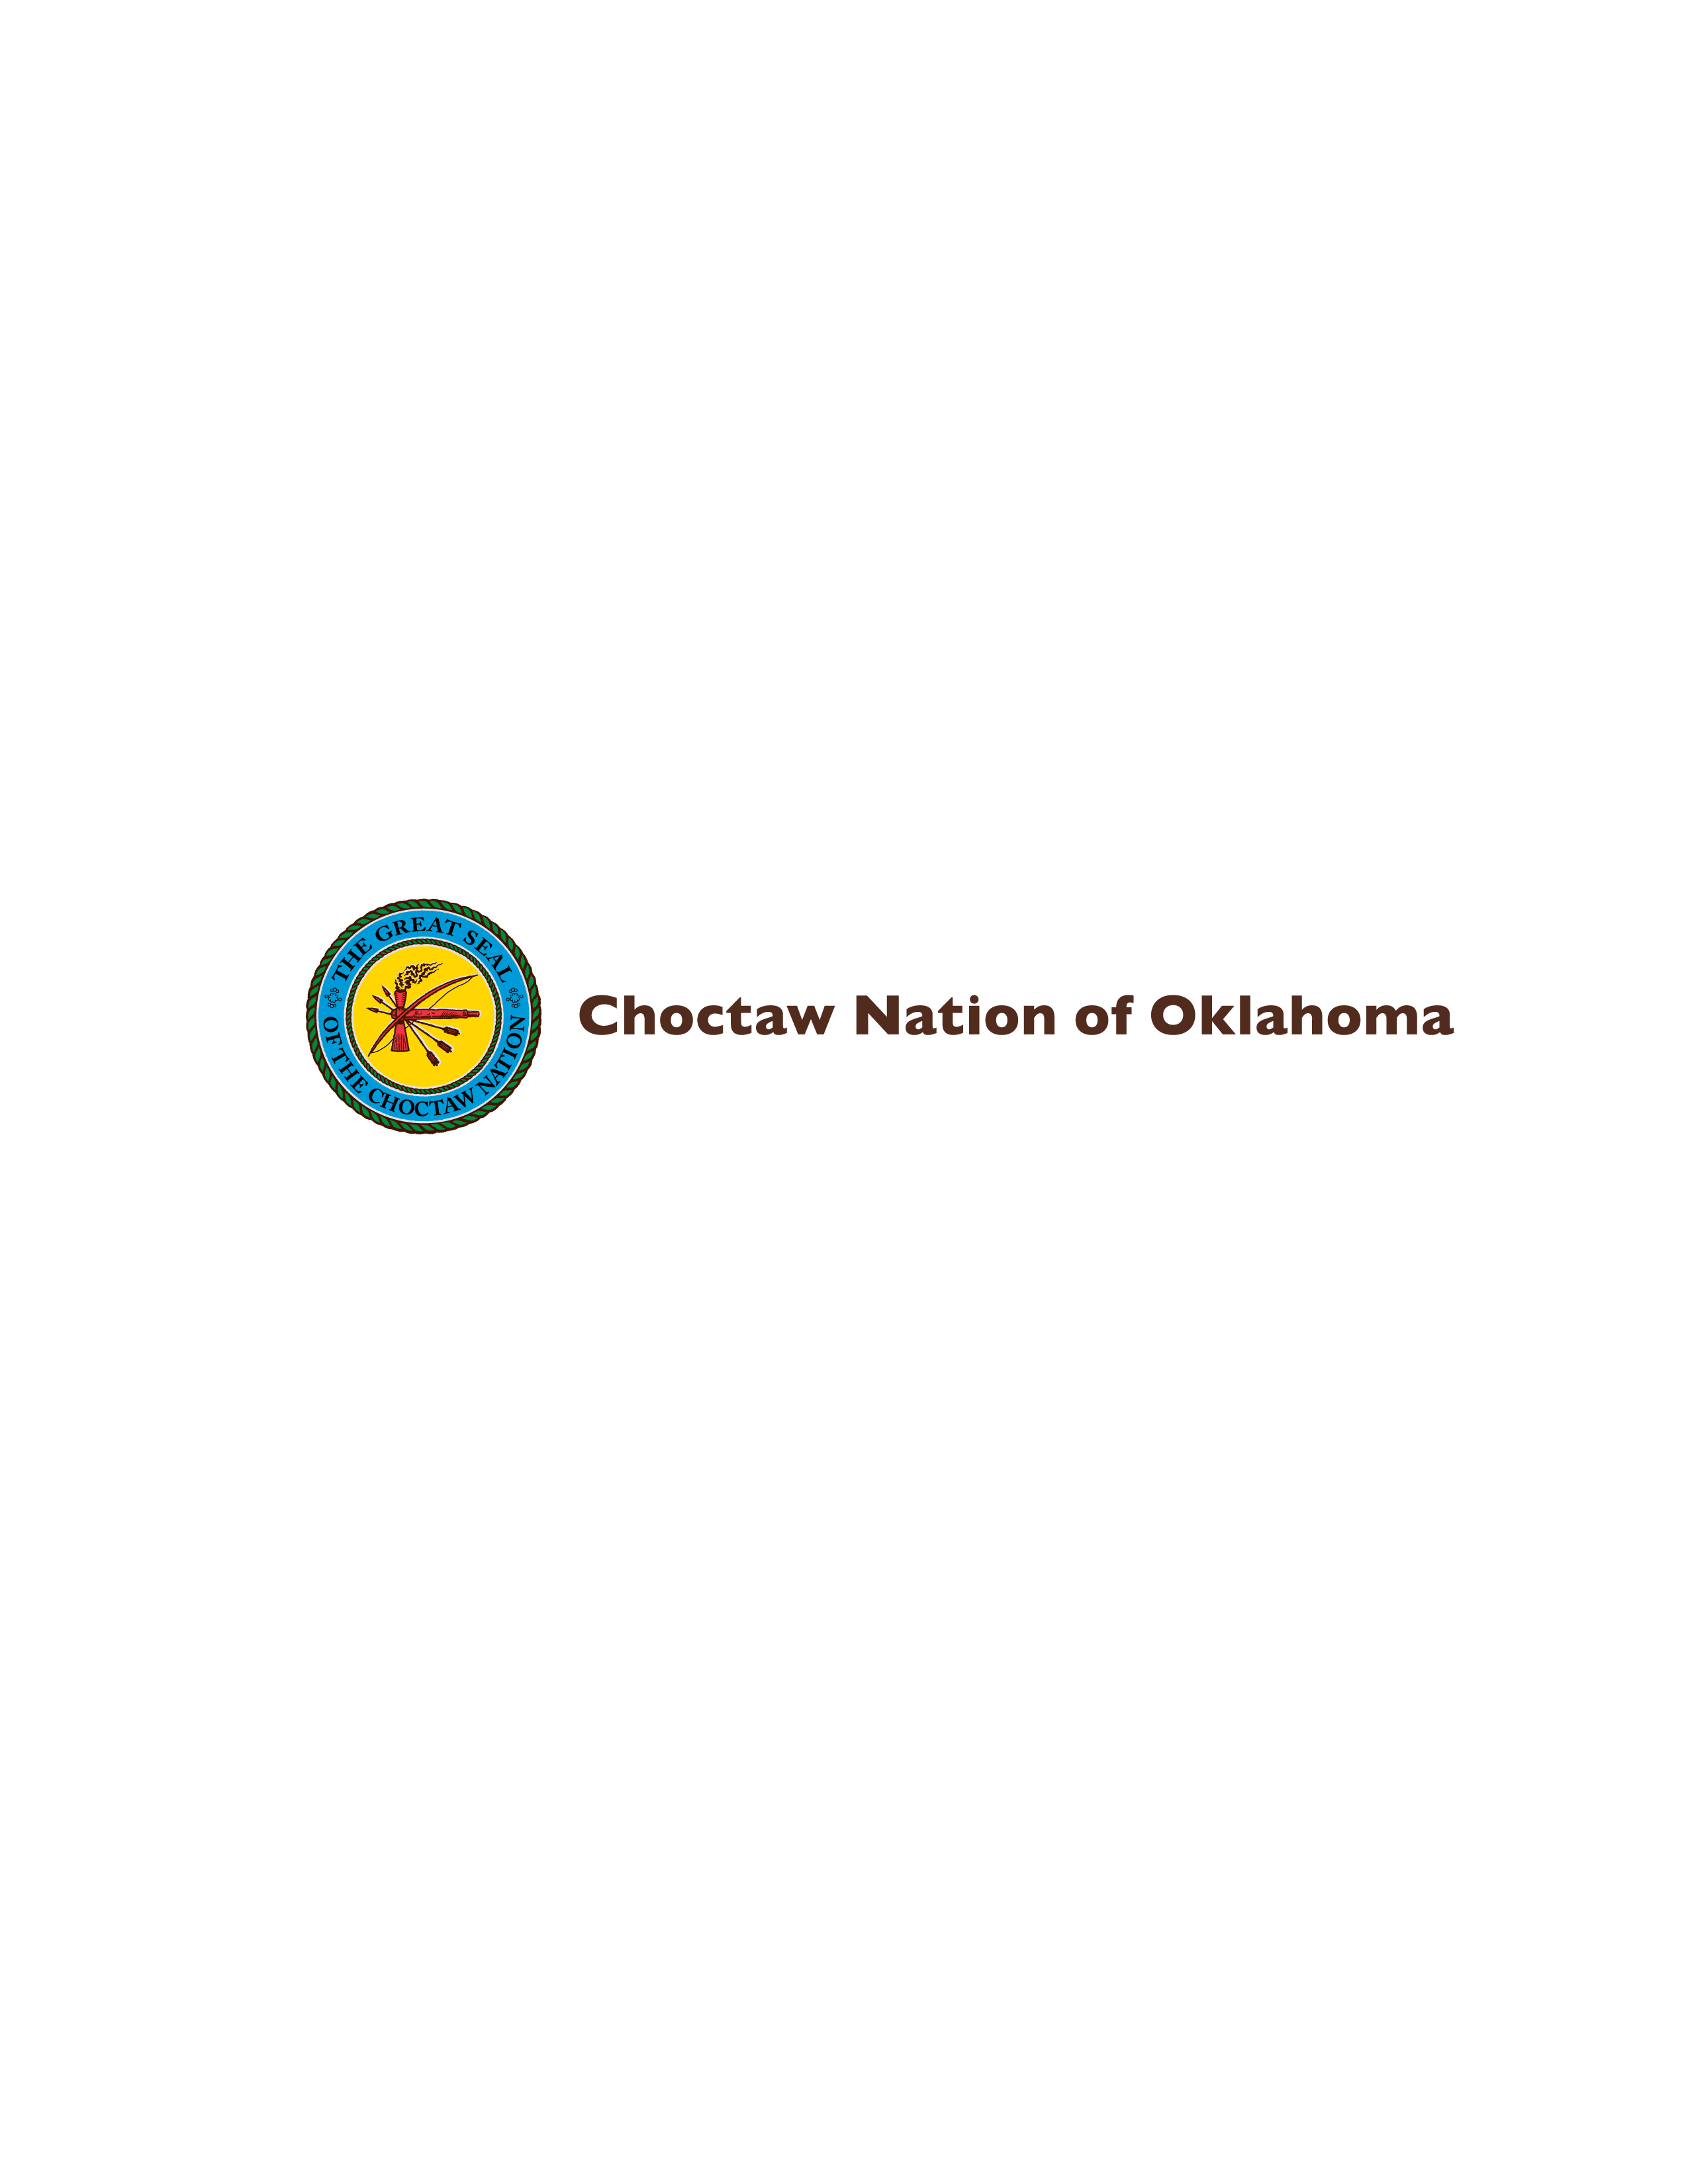 Choctaw logo